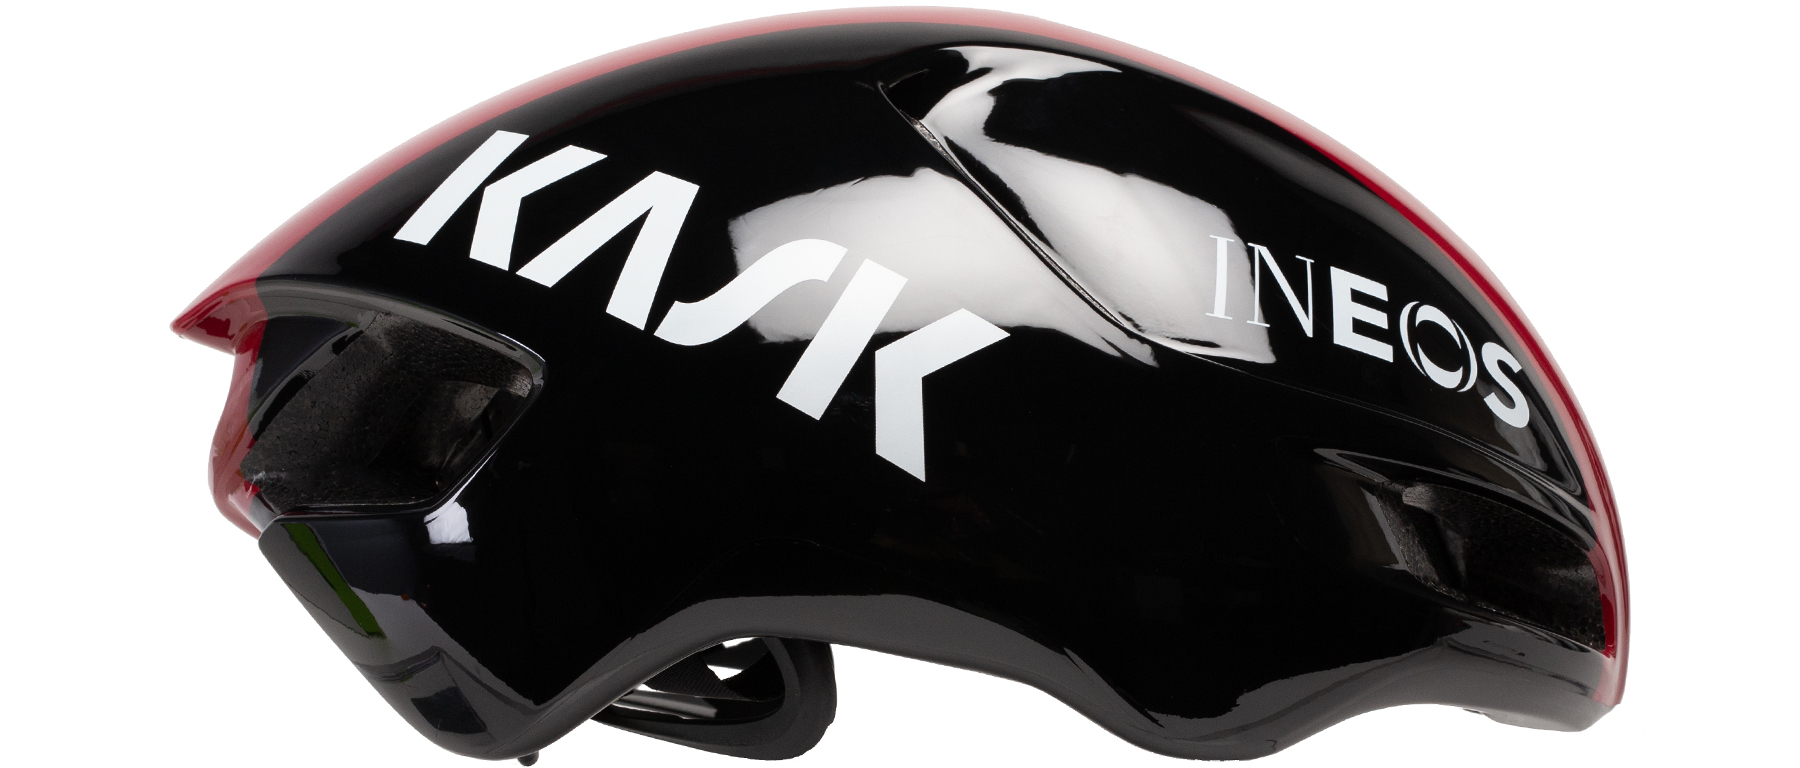 KASK Utopia Ineos Helmet Excel Sports | Shop Online Colorado